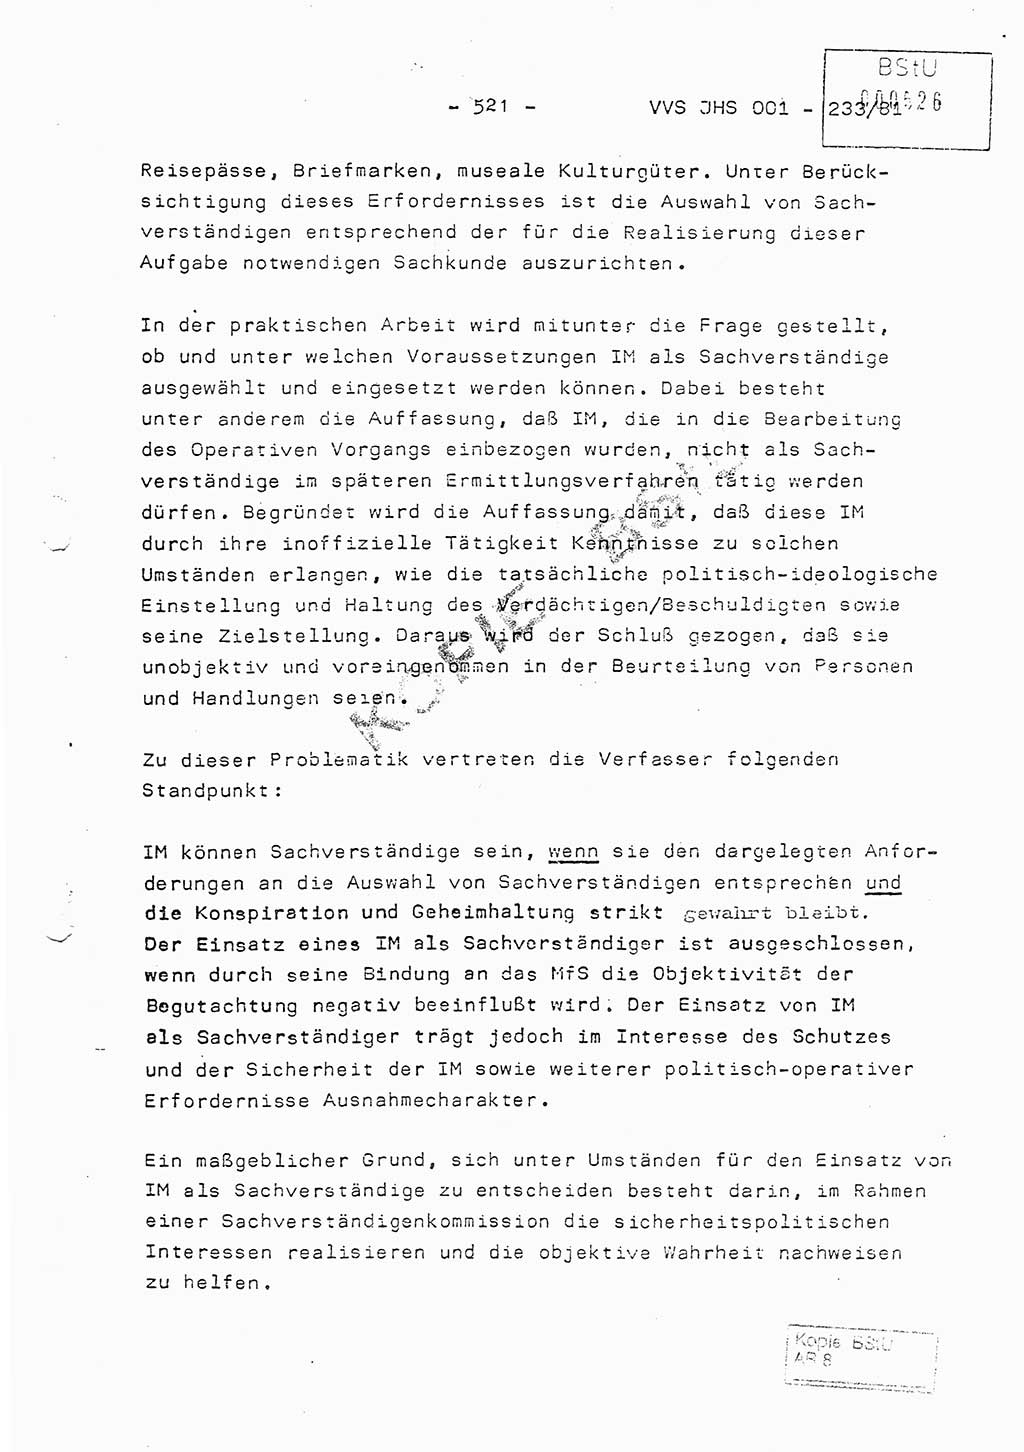 Dissertation Oberstleutnant Horst Zank (JHS), Oberstleutnant Dr. Karl-Heinz Knoblauch (JHS), Oberstleutnant Gustav-Adolf Kowalewski (HA Ⅸ), Oberstleutnant Wolfgang Plötner (HA Ⅸ), Ministerium für Staatssicherheit (MfS) [Deutsche Demokratische Republik (DDR)], Juristische Hochschule (JHS), Vertrauliche Verschlußsache (VVS) o001-233/81, Potsdam 1981, Blatt 521 (Diss. MfS DDR JHS VVS o001-233/81 1981, Bl. 521)